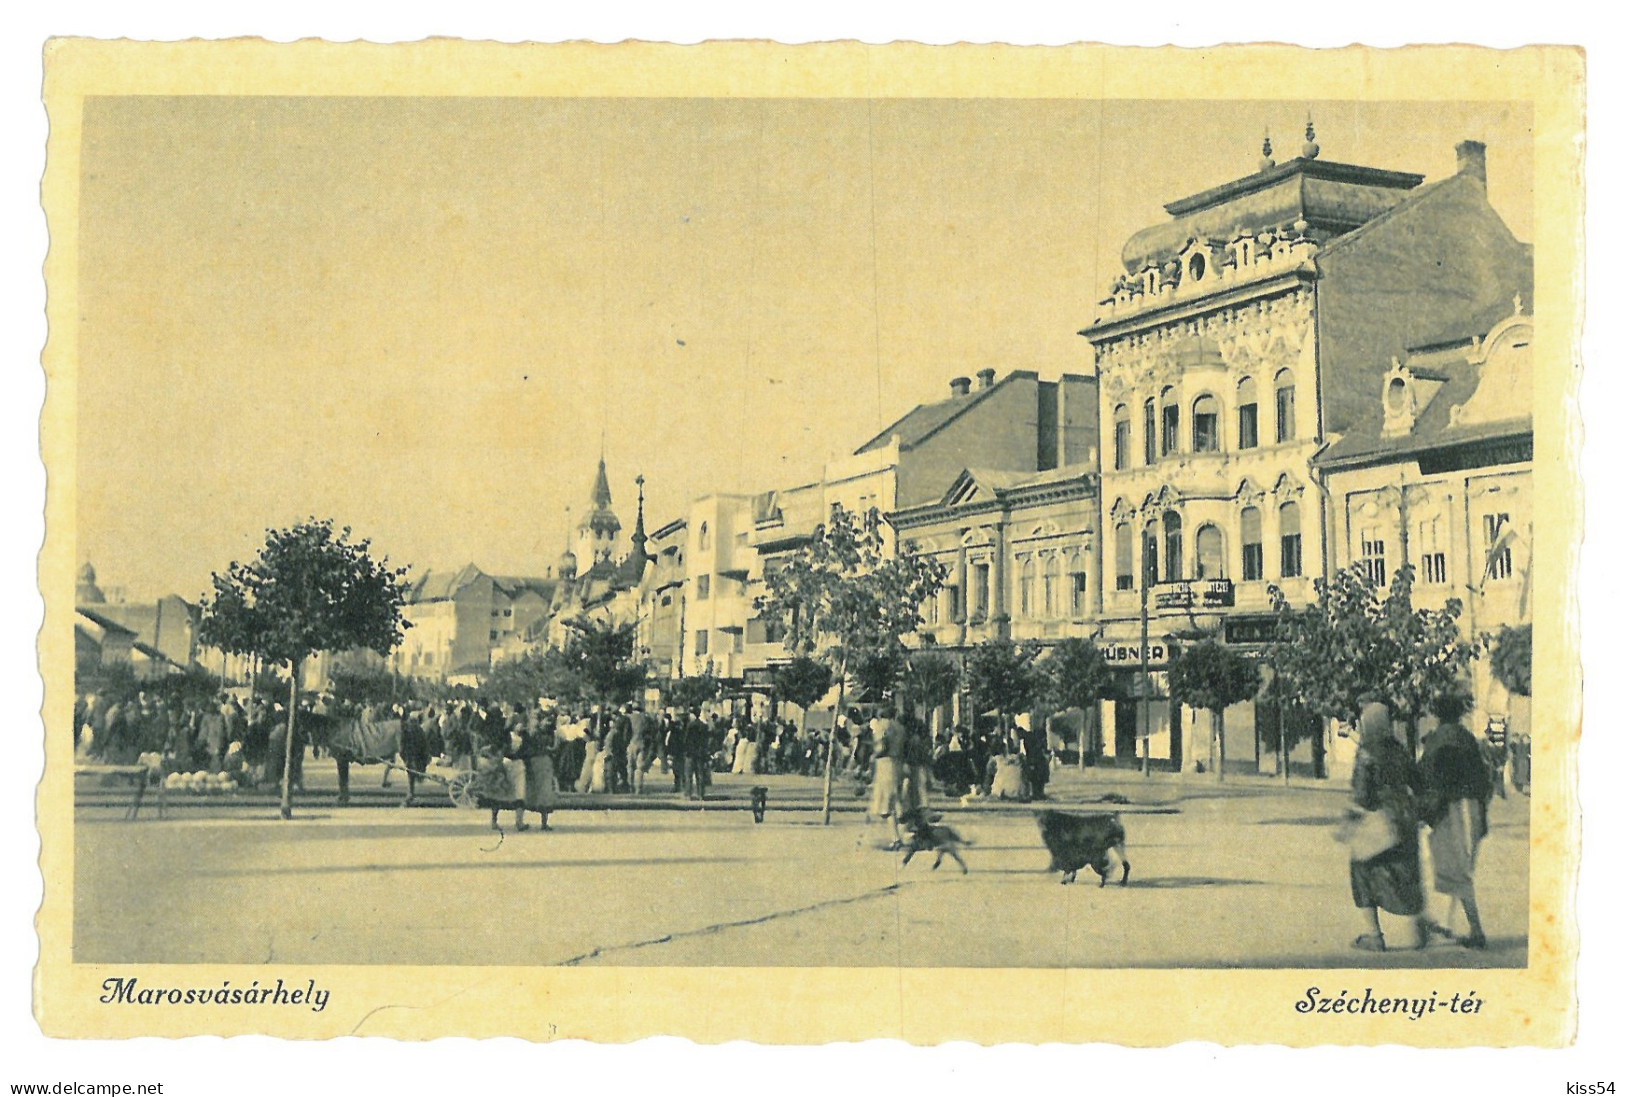 RO 40 - 17922 TARGU-MURES, Market, Romania - Old Postcard, Real PHOTO - Unused - Rumänien